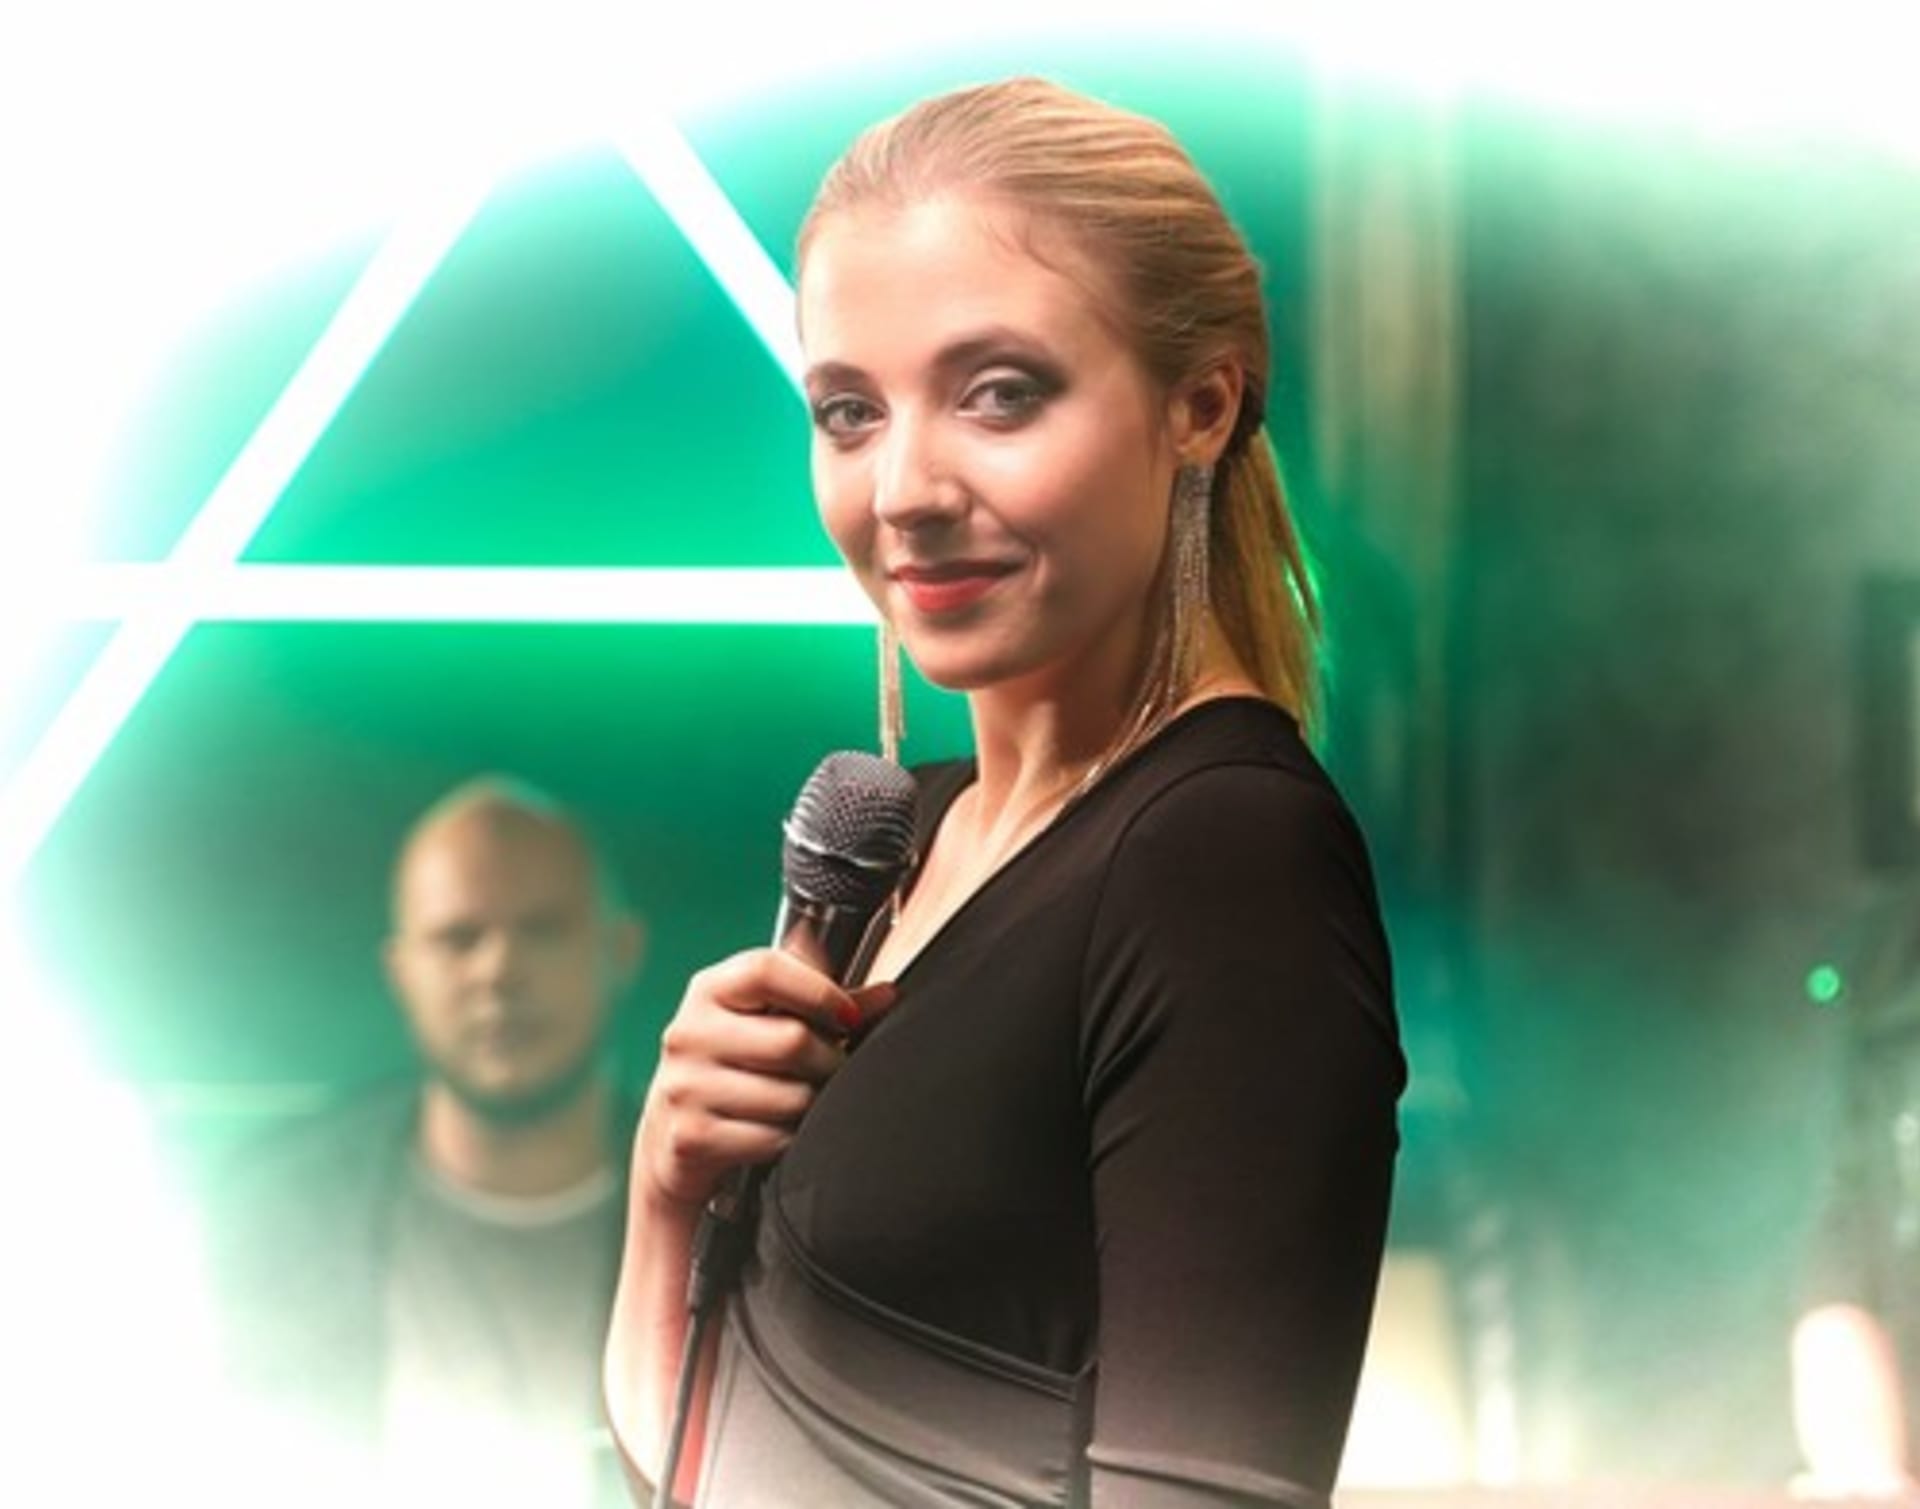 Slováčková při natáčení videoklipu s názvem LEO v roce 2019